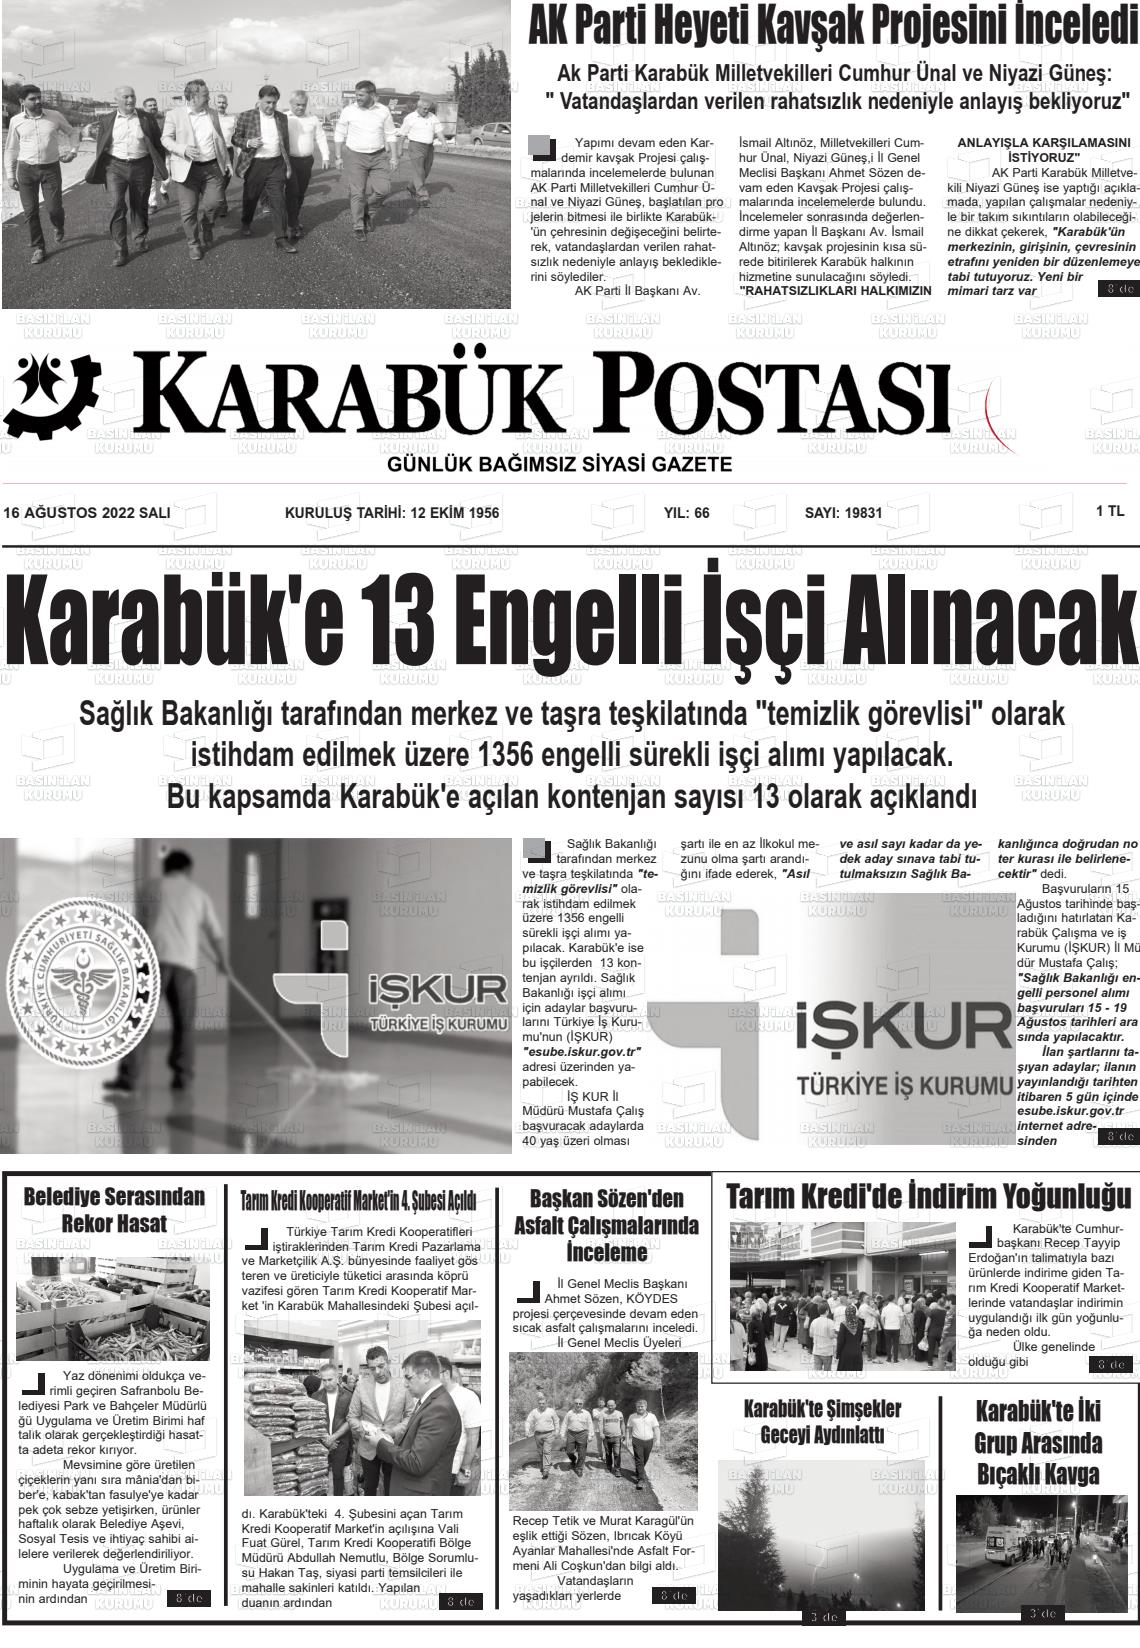 16 Ağustos 2022 Karabük Postası Gazete Manşeti